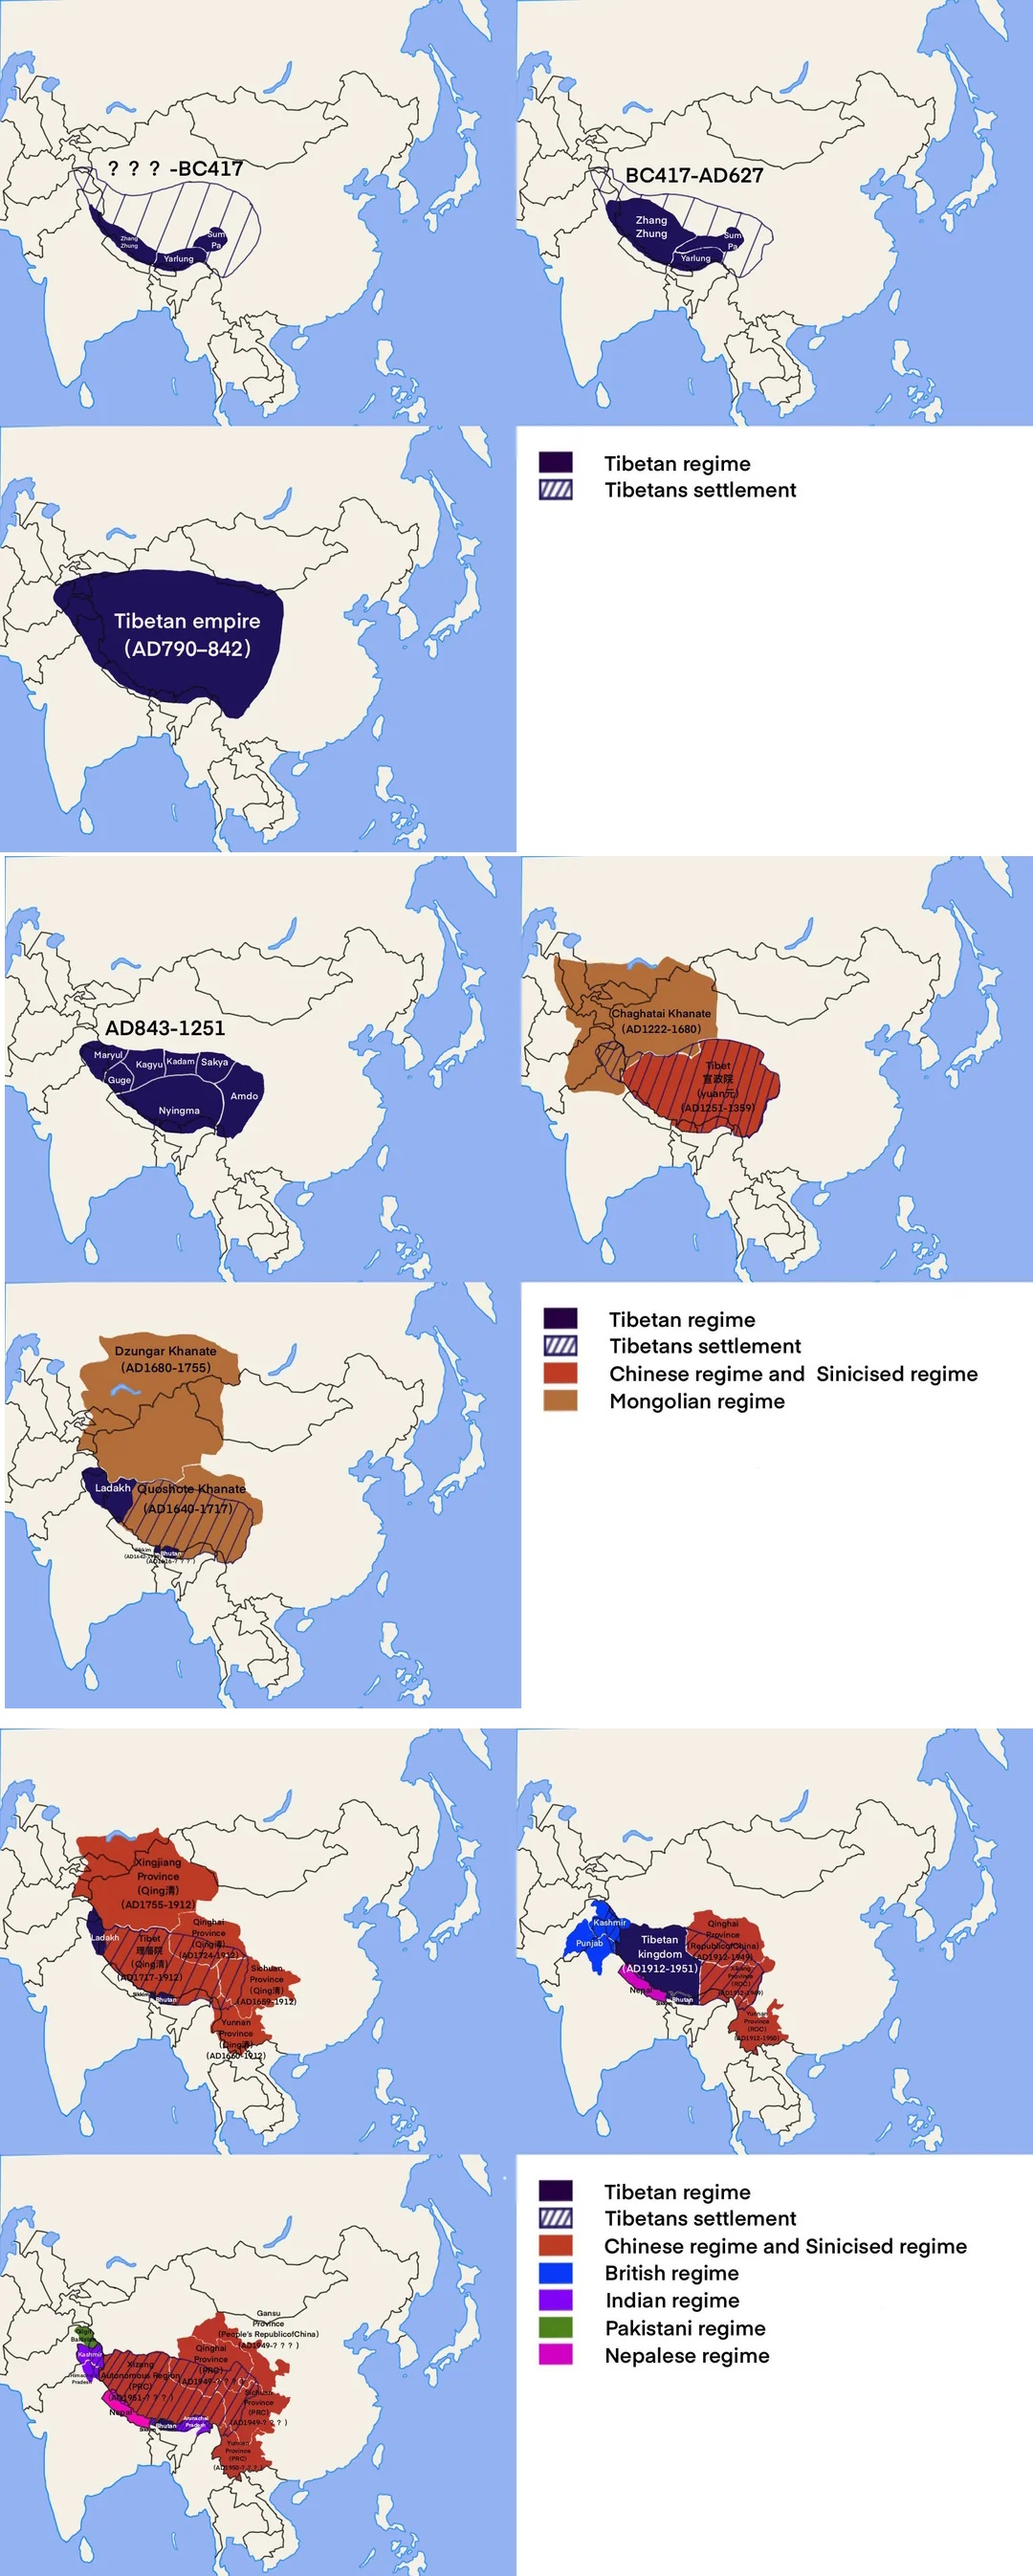 Państwa tworzone przez plemiona tybetańskie. Ekspansja, podbój i upadek od 417